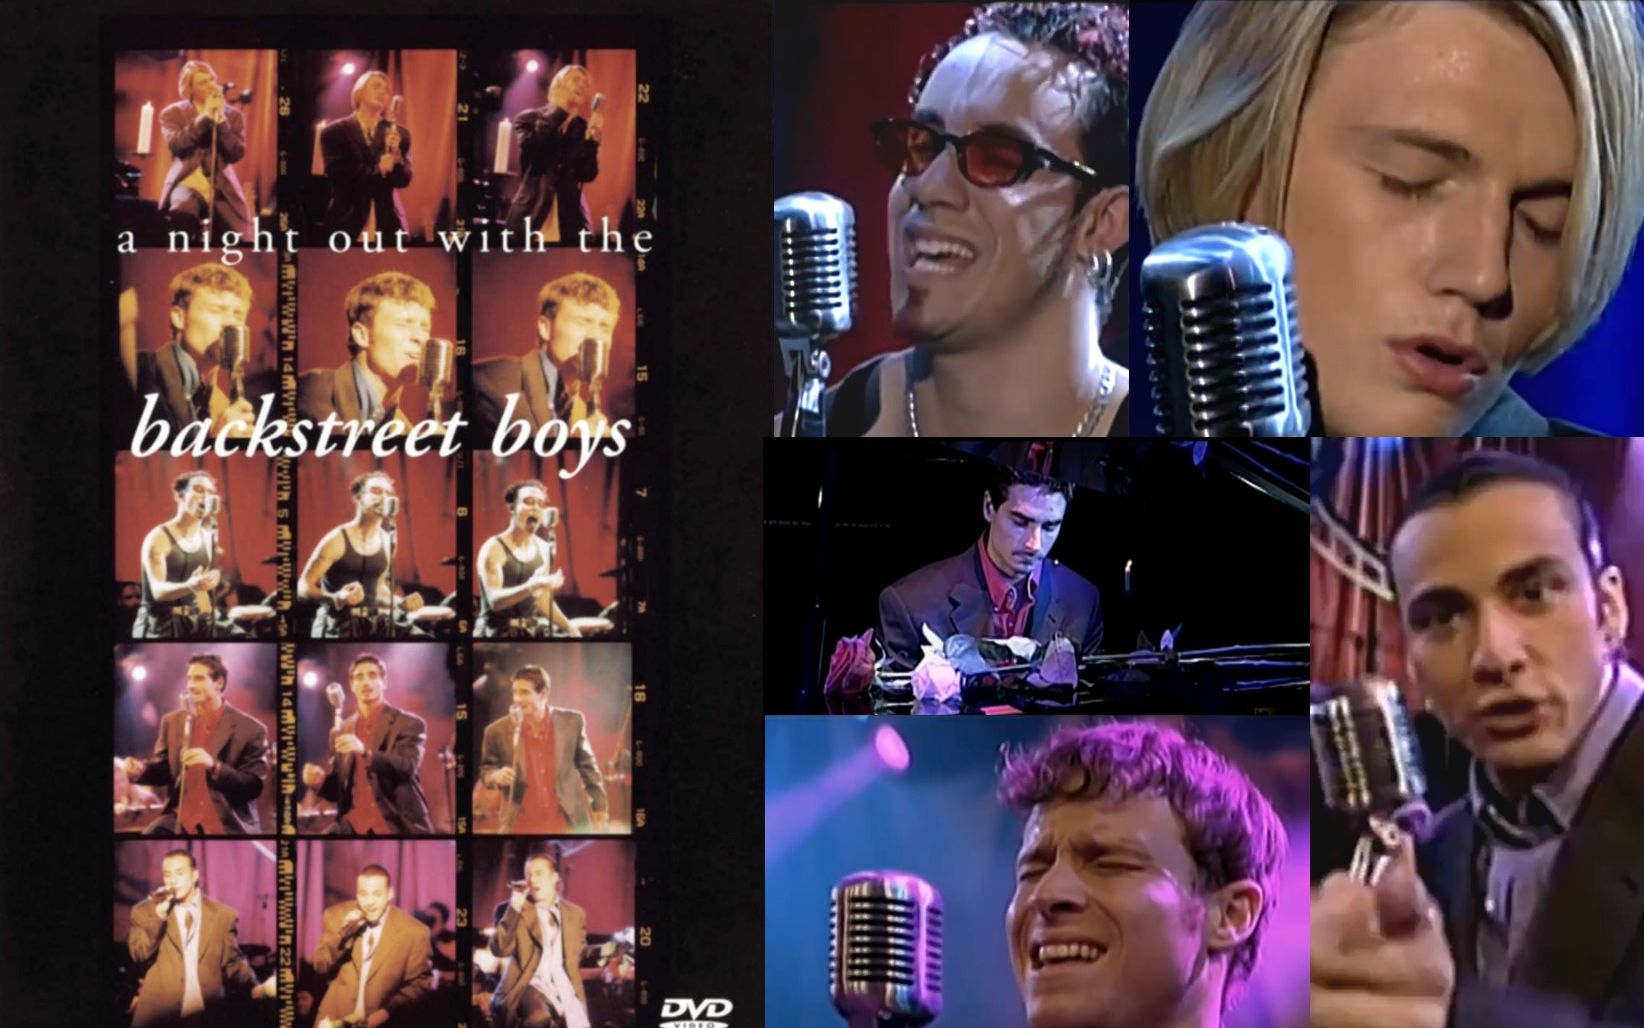 [图]【后街男孩1998.11.17不插电演唱会】Backstreet Boys Unplugged